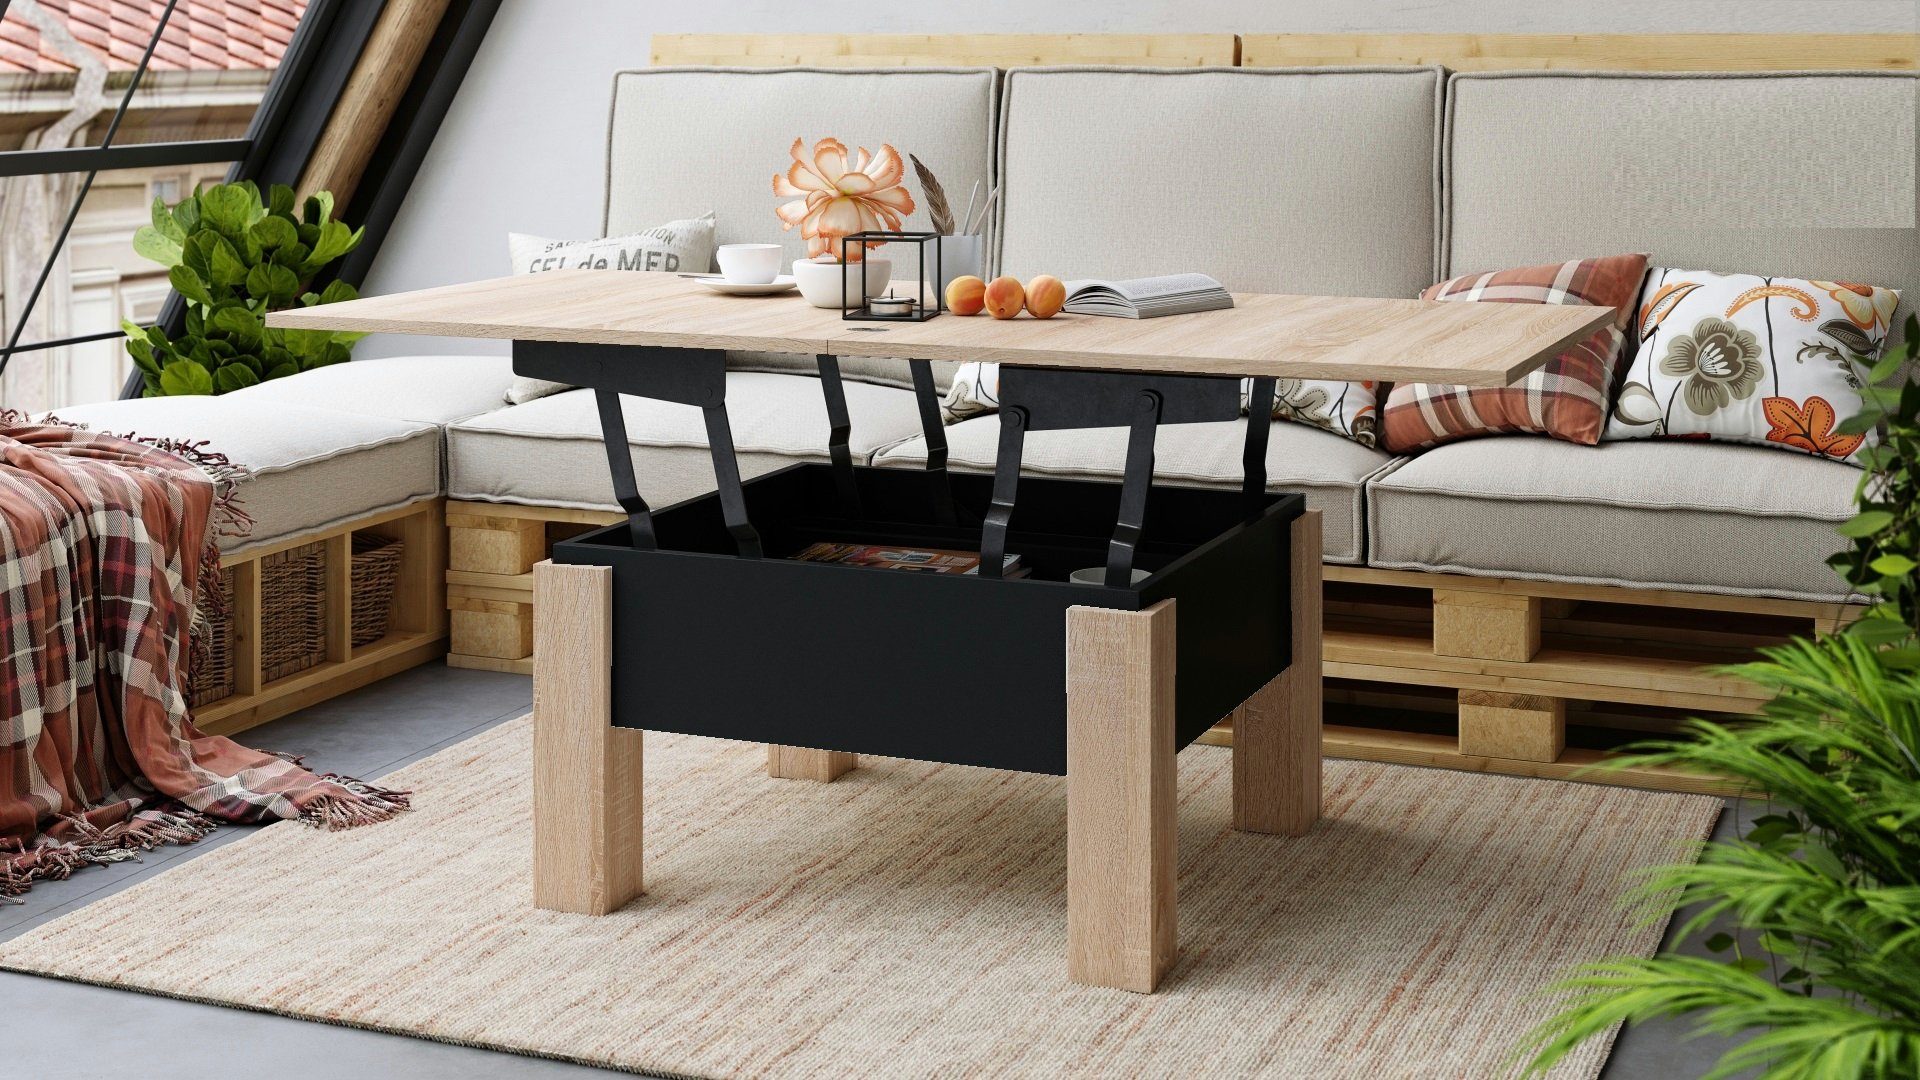 Tisch matt / Esstisch höhenverstellbar Design designimpex Couchtisch Schwarz Eiche Oslo aufklappbar Sonoma Couchtisch